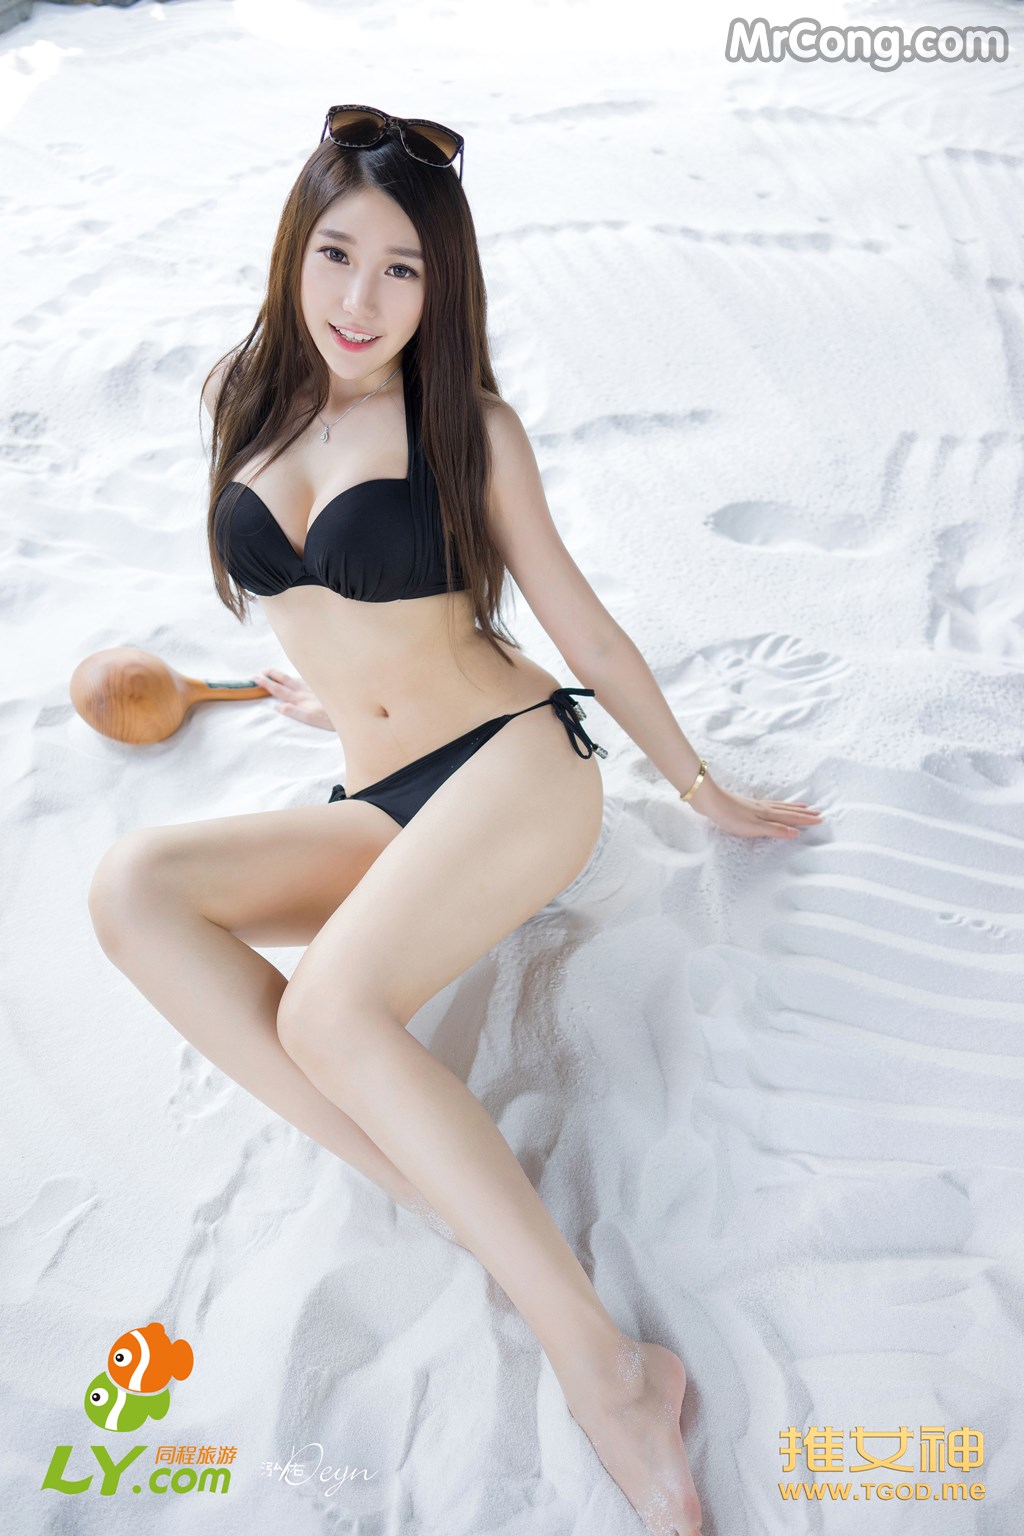 TGOD 2014-09-17: Model Lynn (刘 奕宁) (63 photos) photo 4-1